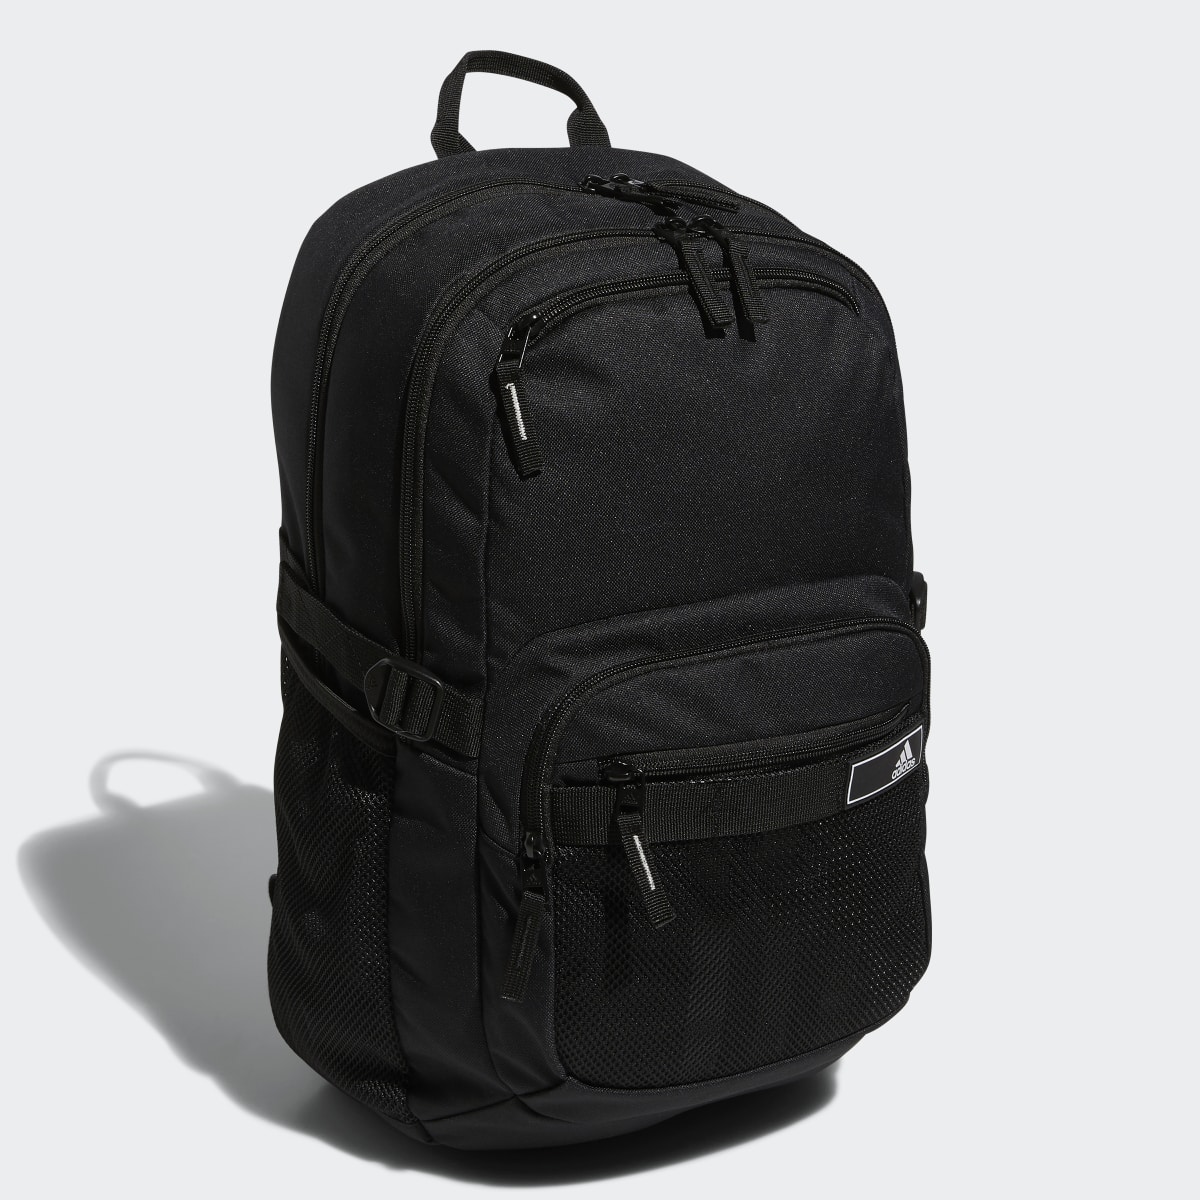 Adidas Energy Backpack. 4